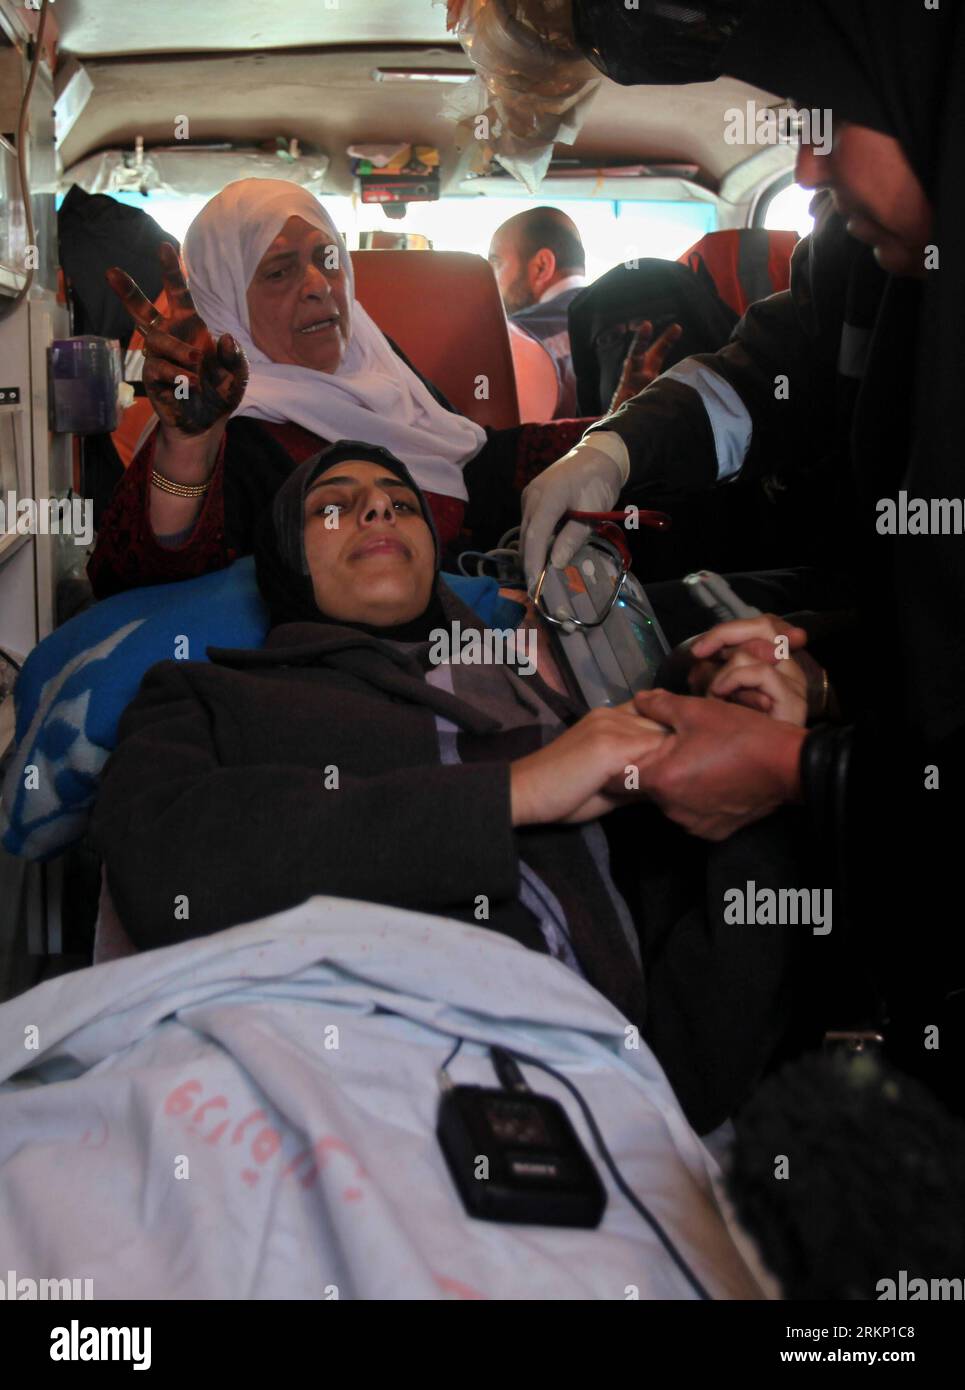 Bildnummer : 57810289 Datum : 02.04.2012 Copyright : imago/Xinhua (120402)-- GAZA, 2 avril 2012 (Xinhua) -- Hanaa Shalabi, prisonnière palestinienne expulsée, arrive à l'hôpital al-Shifa de Gaza, le 1 avril 2012. Shalabi, qui a mis fin à une grève de la faim de 43 jours pour protester contre sa détention administrative par Israël, a été bannie de Cisjordanie pour son exil temporaire dans la bande de Gaza dimanche. (Xinhua/Wissam Nassar)(msq) MIDEAST-GAZA-DEPORTEE-PRISONER-HANA-SHALABI PUBLICATIONxNOTxINxCHN Politik Gesellschaft Hungerstreik Krankenhaus Einlieferung xda x0x 2012 hoch 57810289 Date 02 04 2012 Banque D'Images